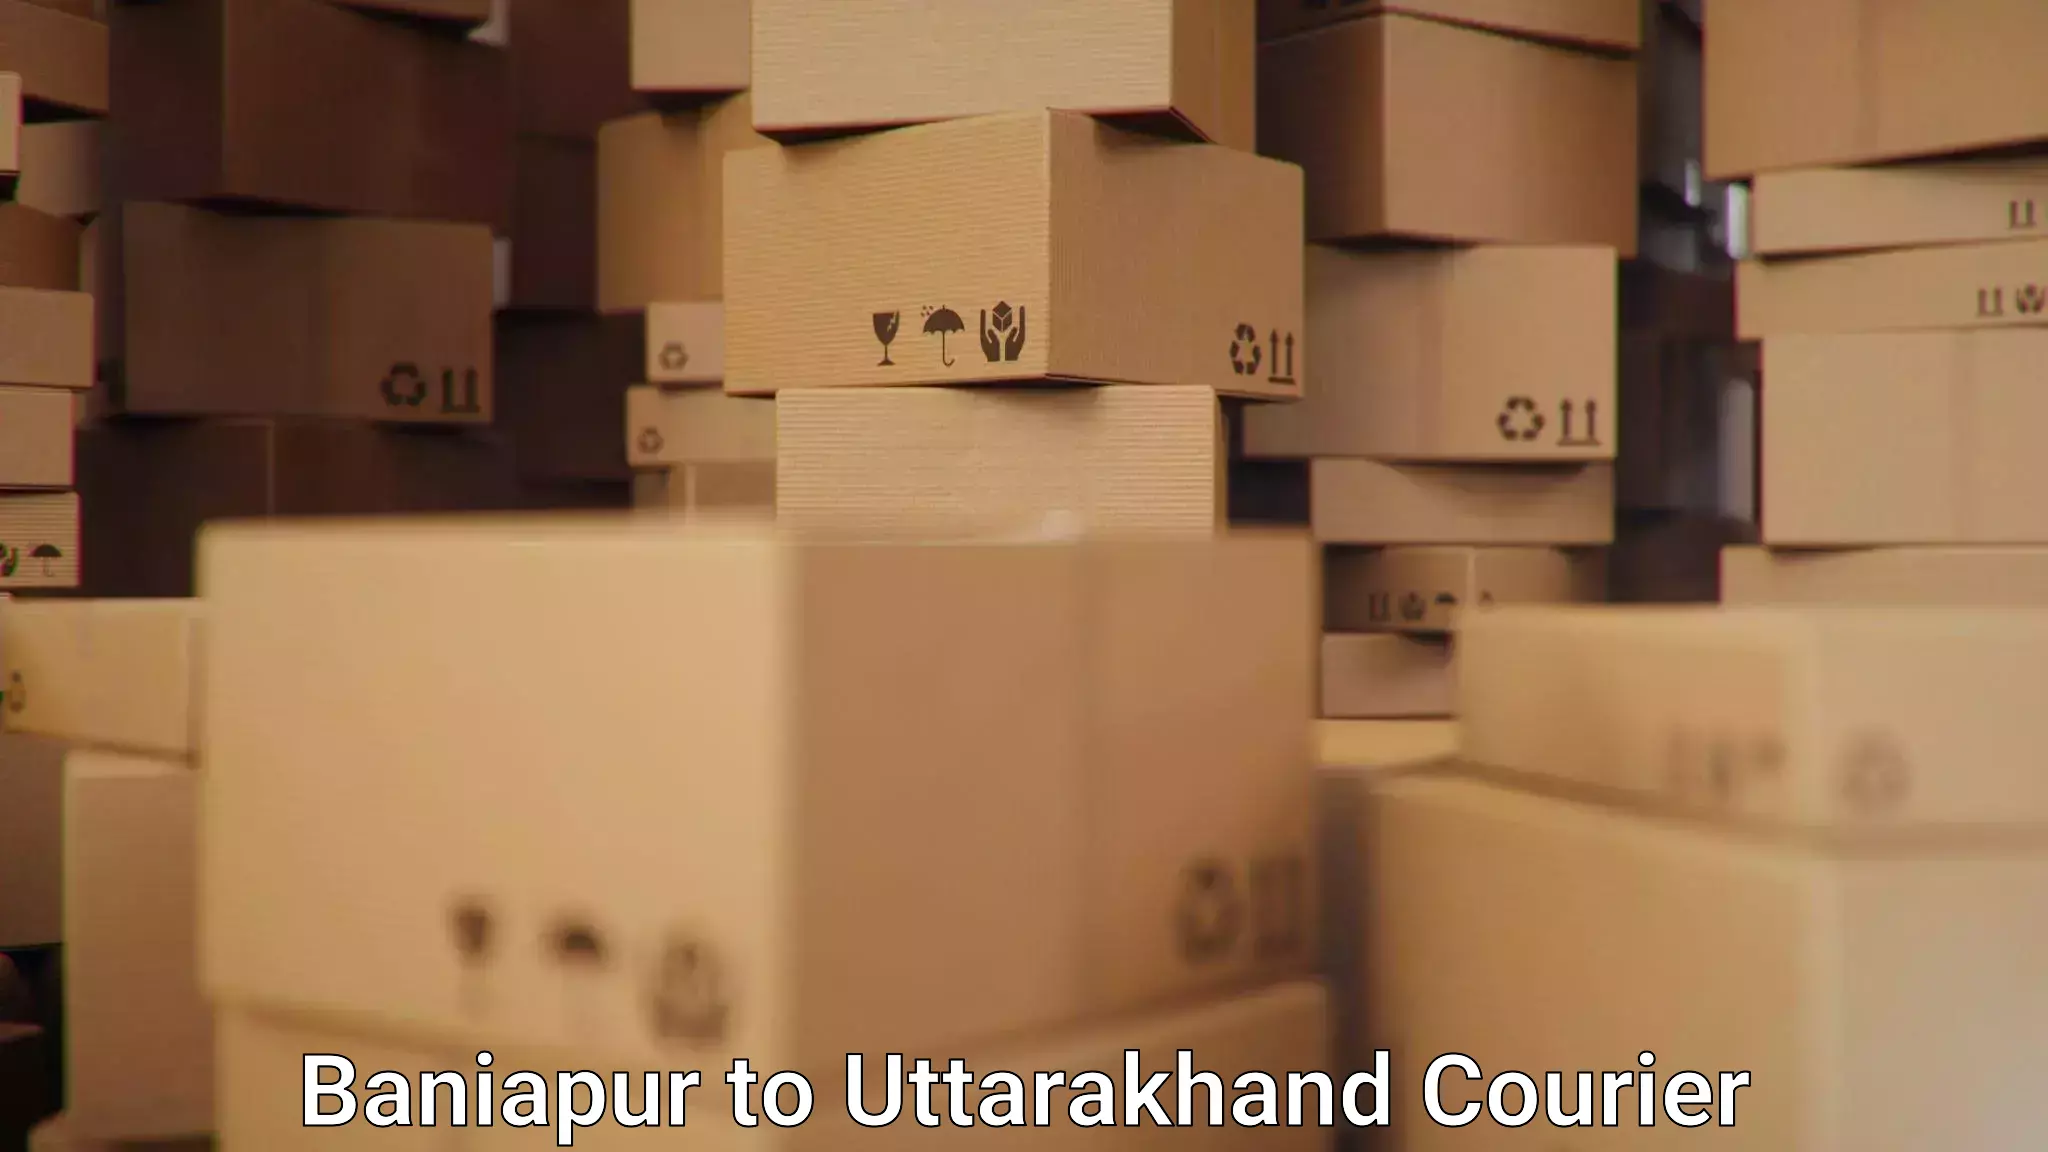 Nationwide shipping services Baniapur to Uttarakhand